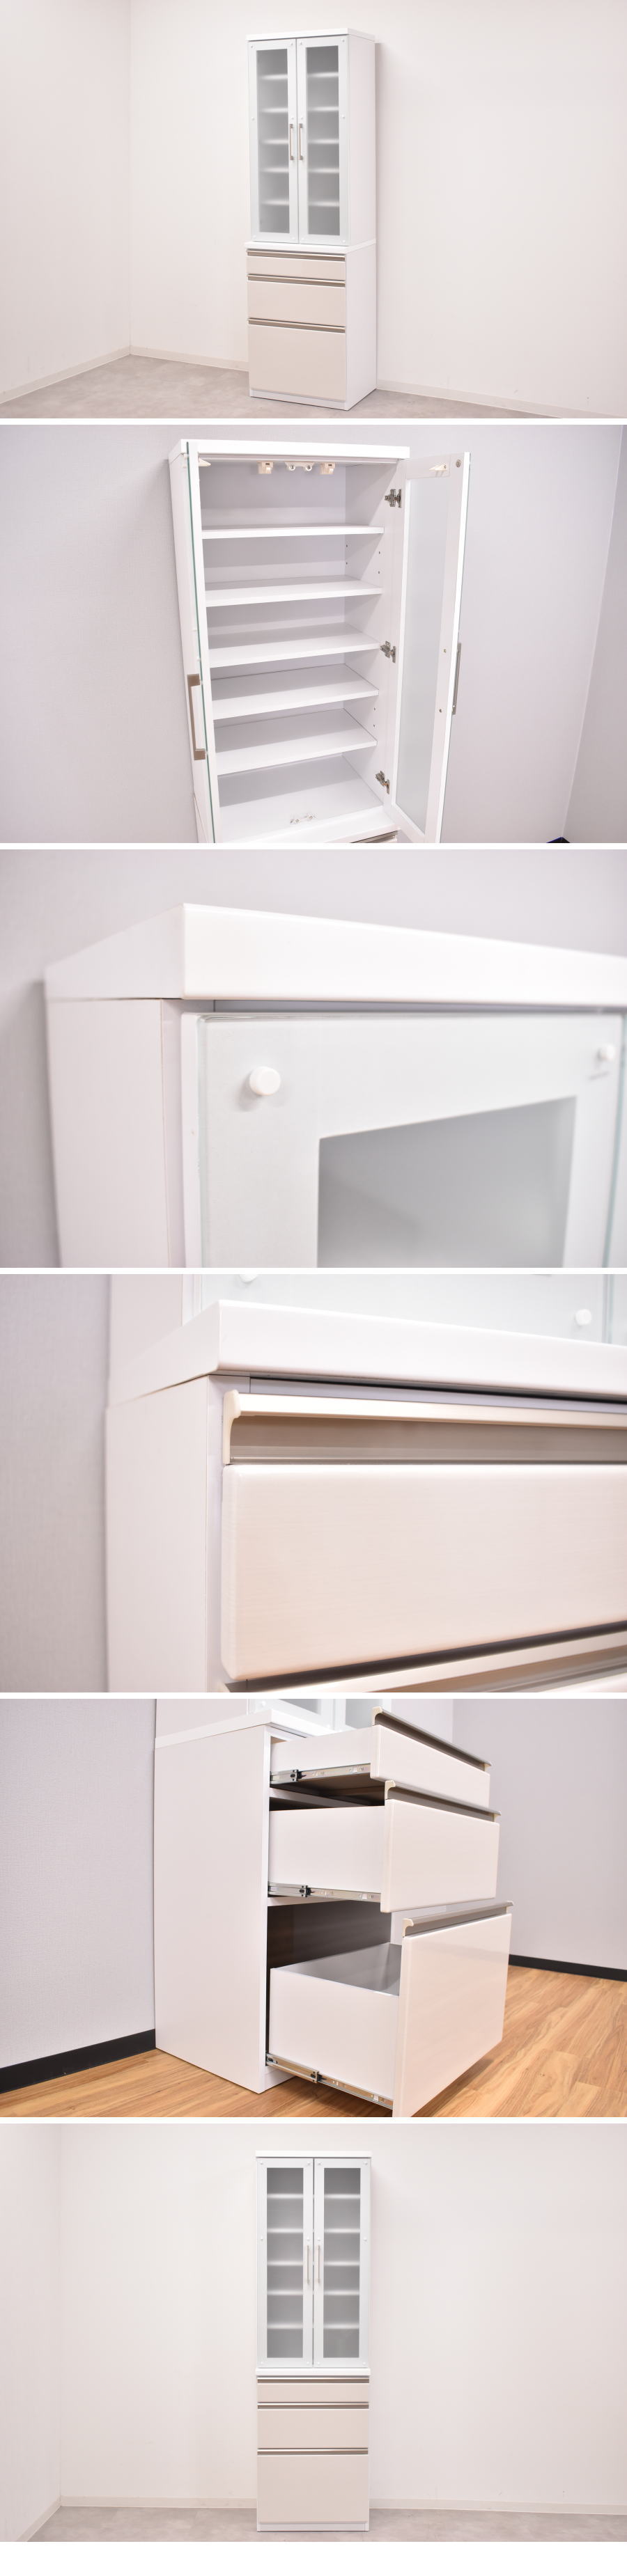 特注製作ホワイト鏡面 60cm幅 キッチンラック 食器棚 アウトレット家具 収納 キッチンボード 0034566 食器棚